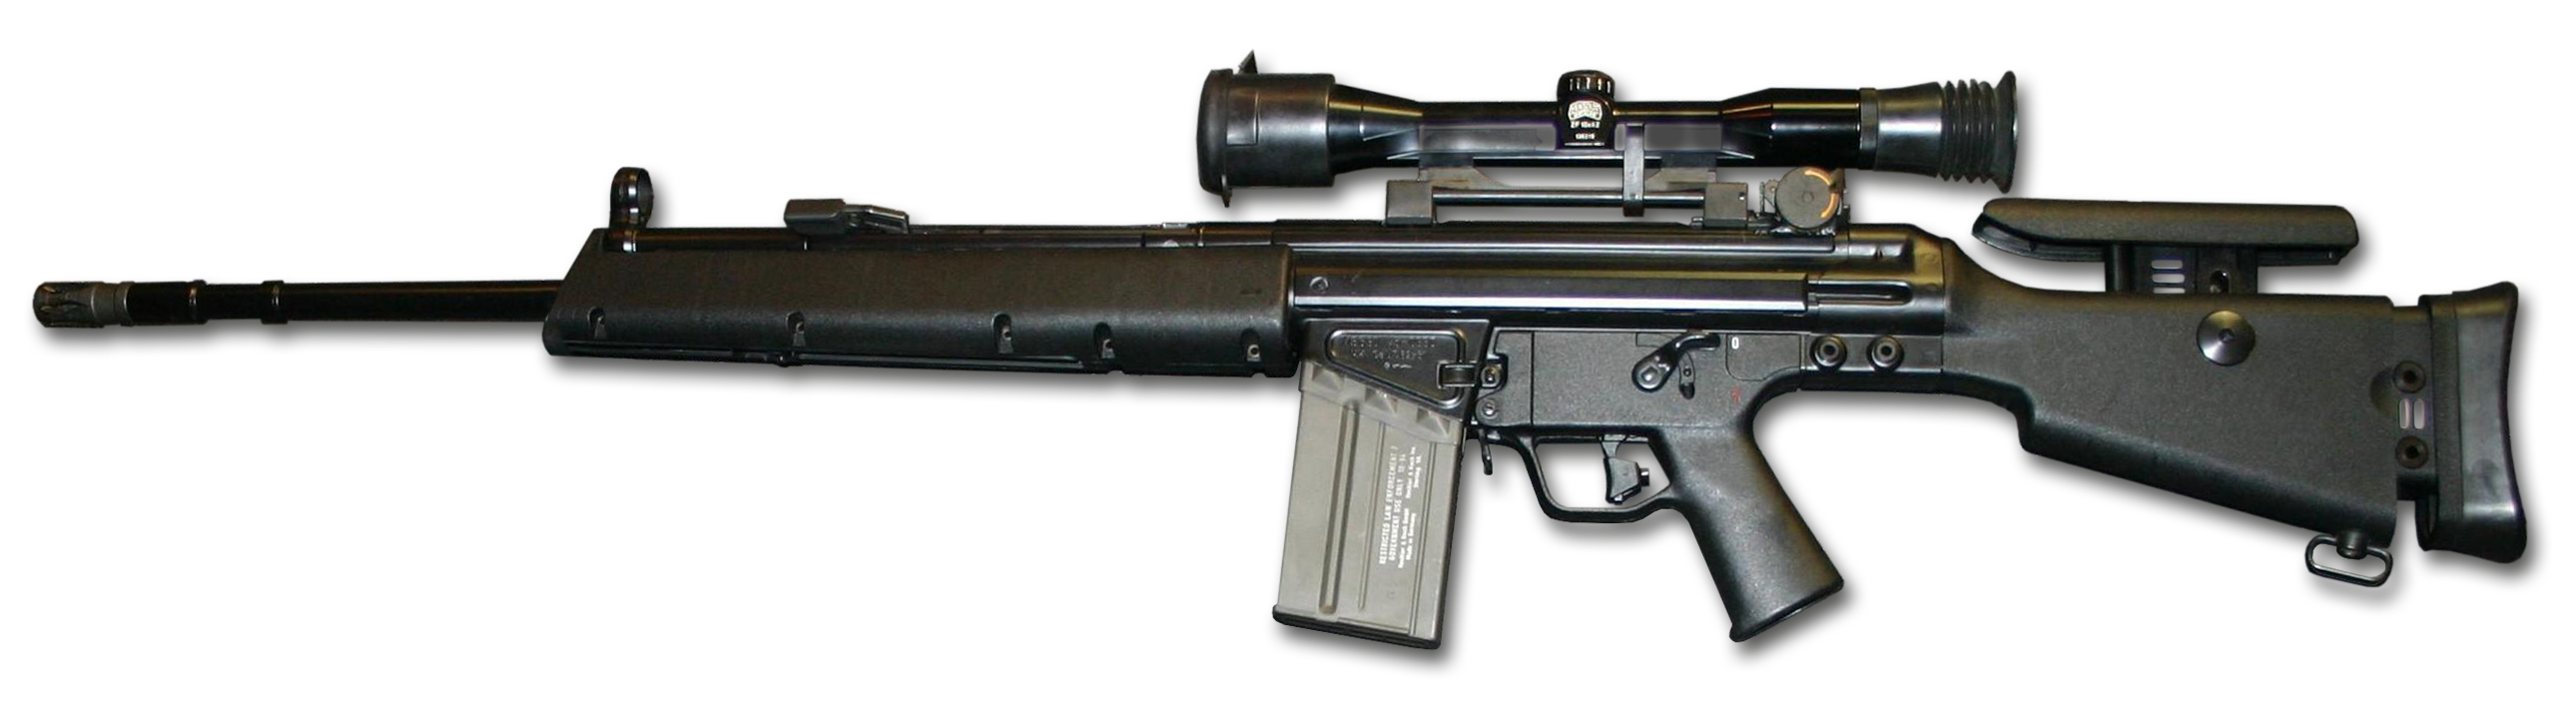 MSG_90_rifle_2014_noBG.jpg